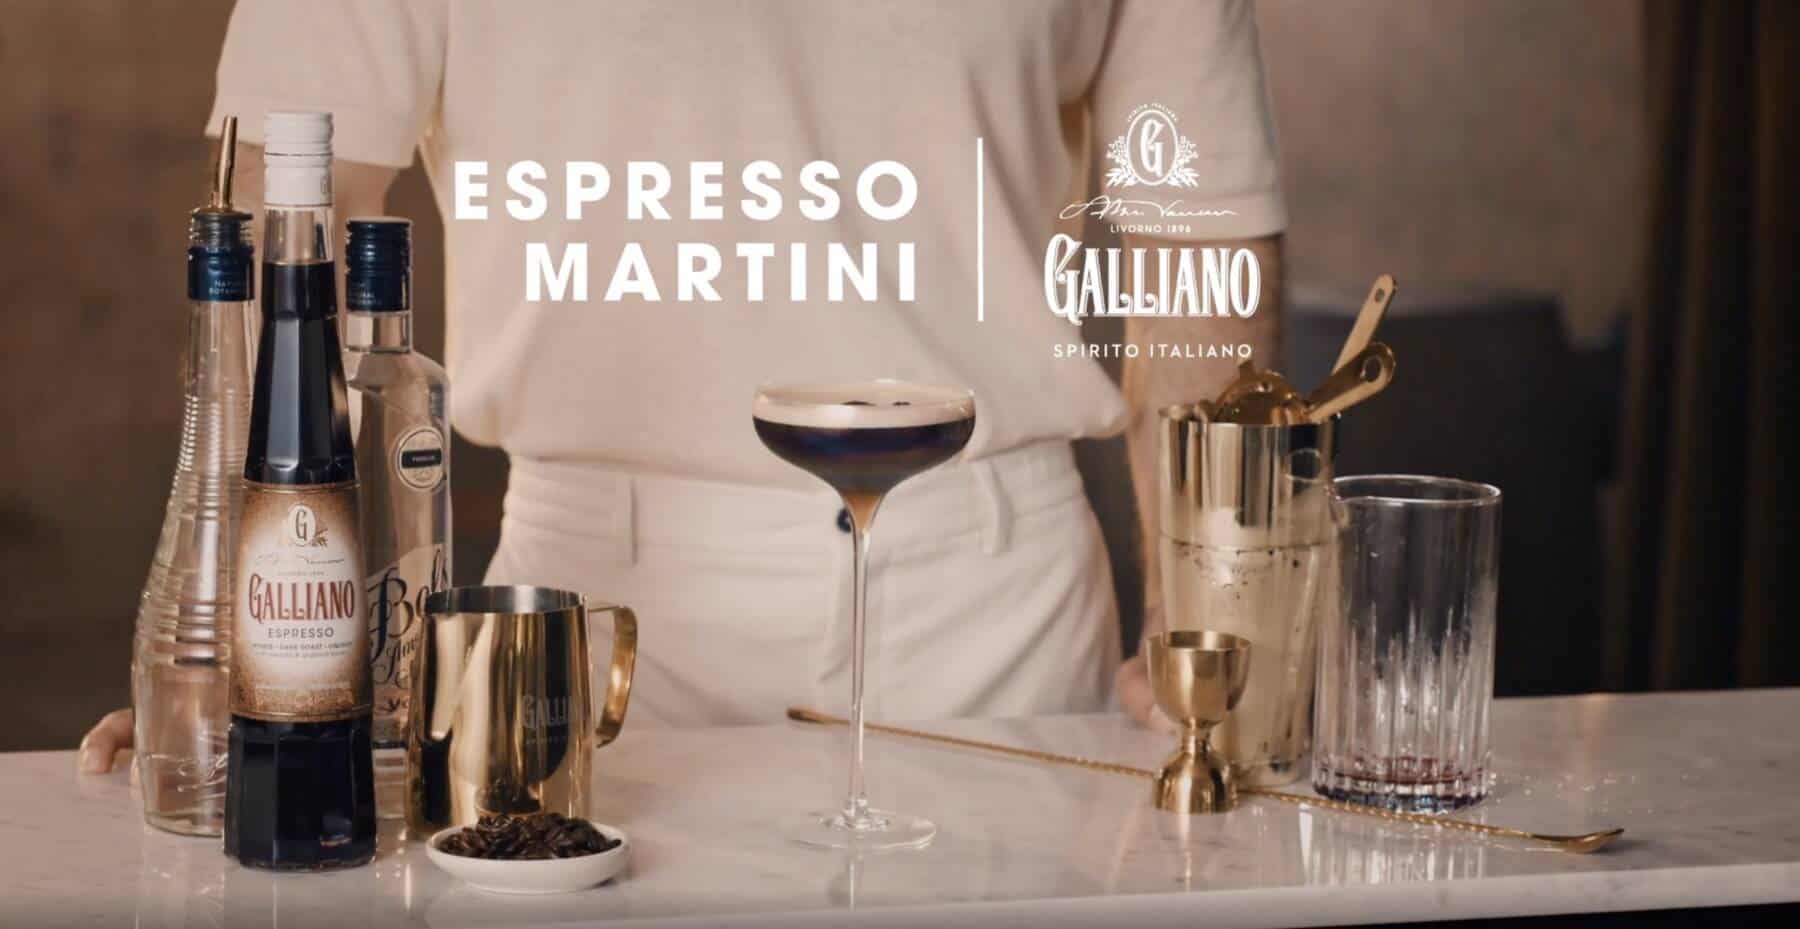 Espresso Martini cocktail by Galliano